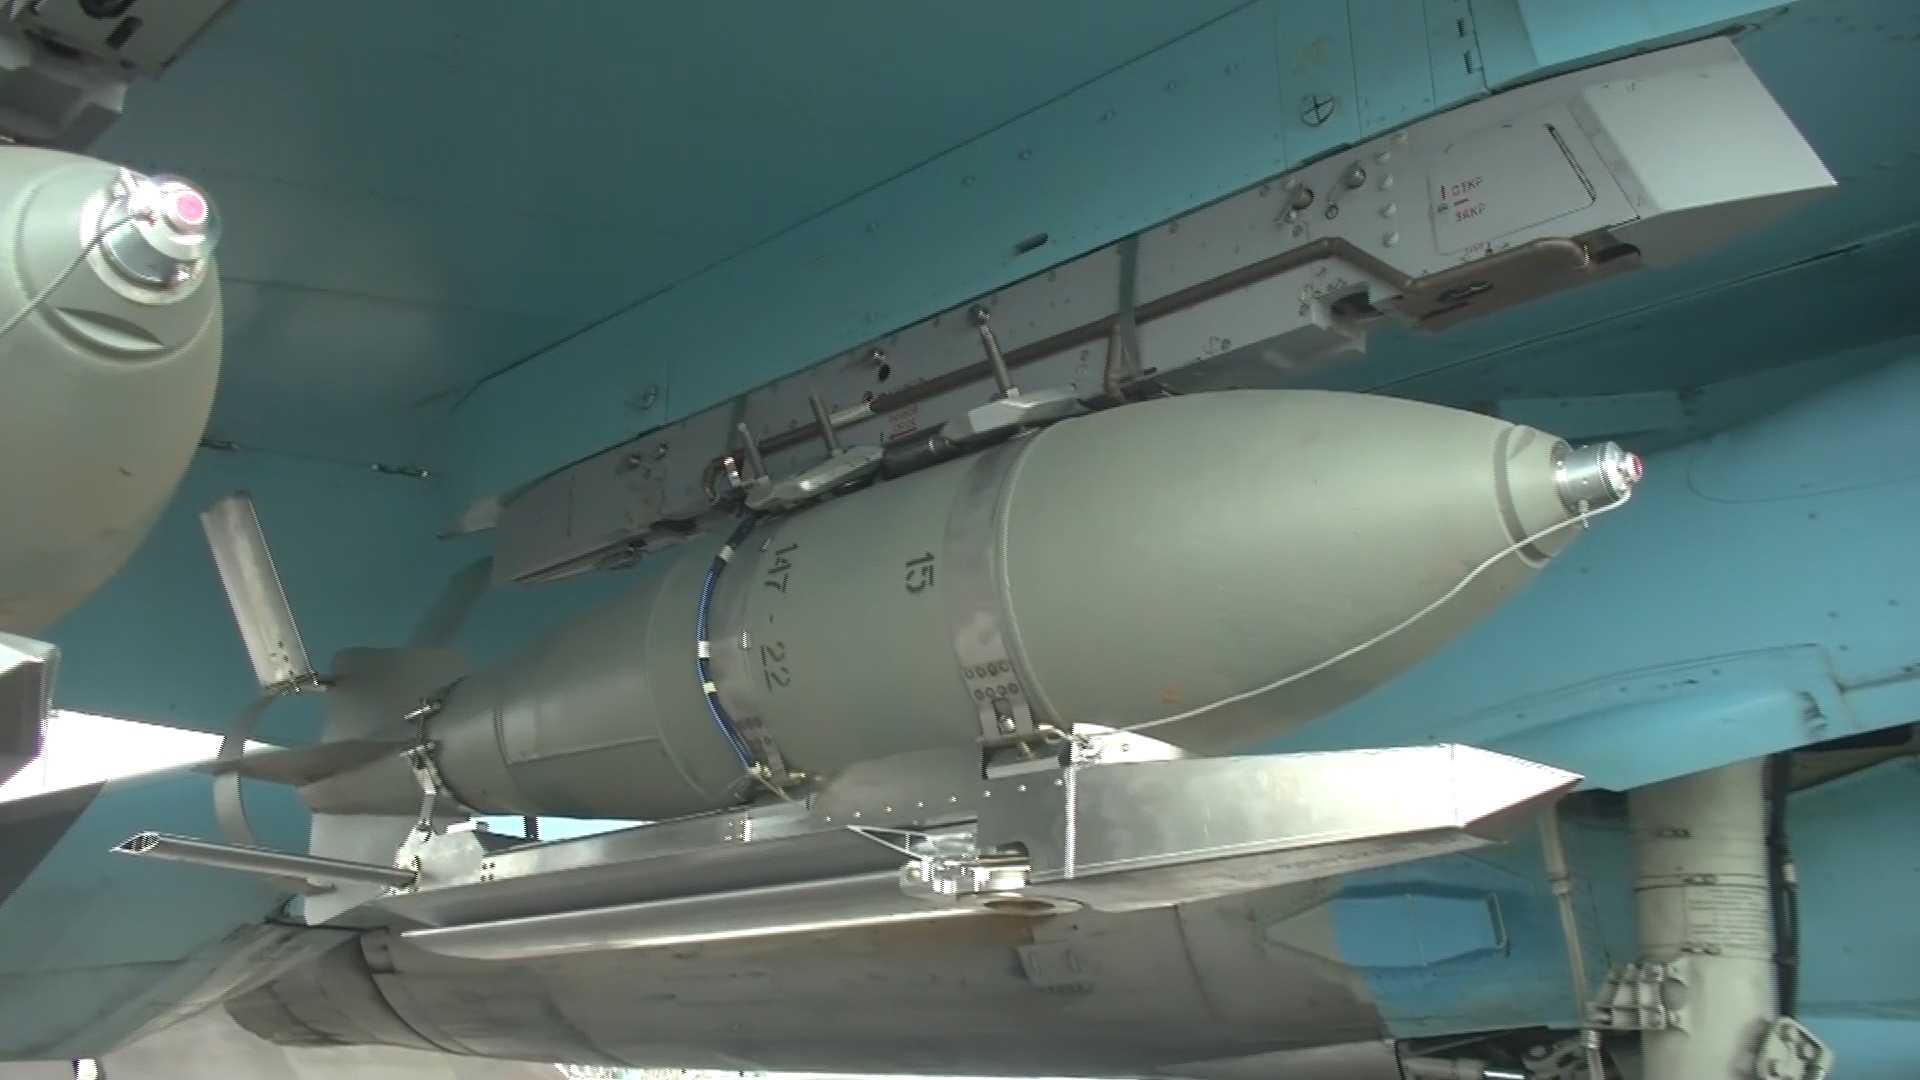 Истребитель-бомбардировщик Су-34 ВКС России снаряжён фугасными авиационными бомбами ФАБ-500 с УМПК.